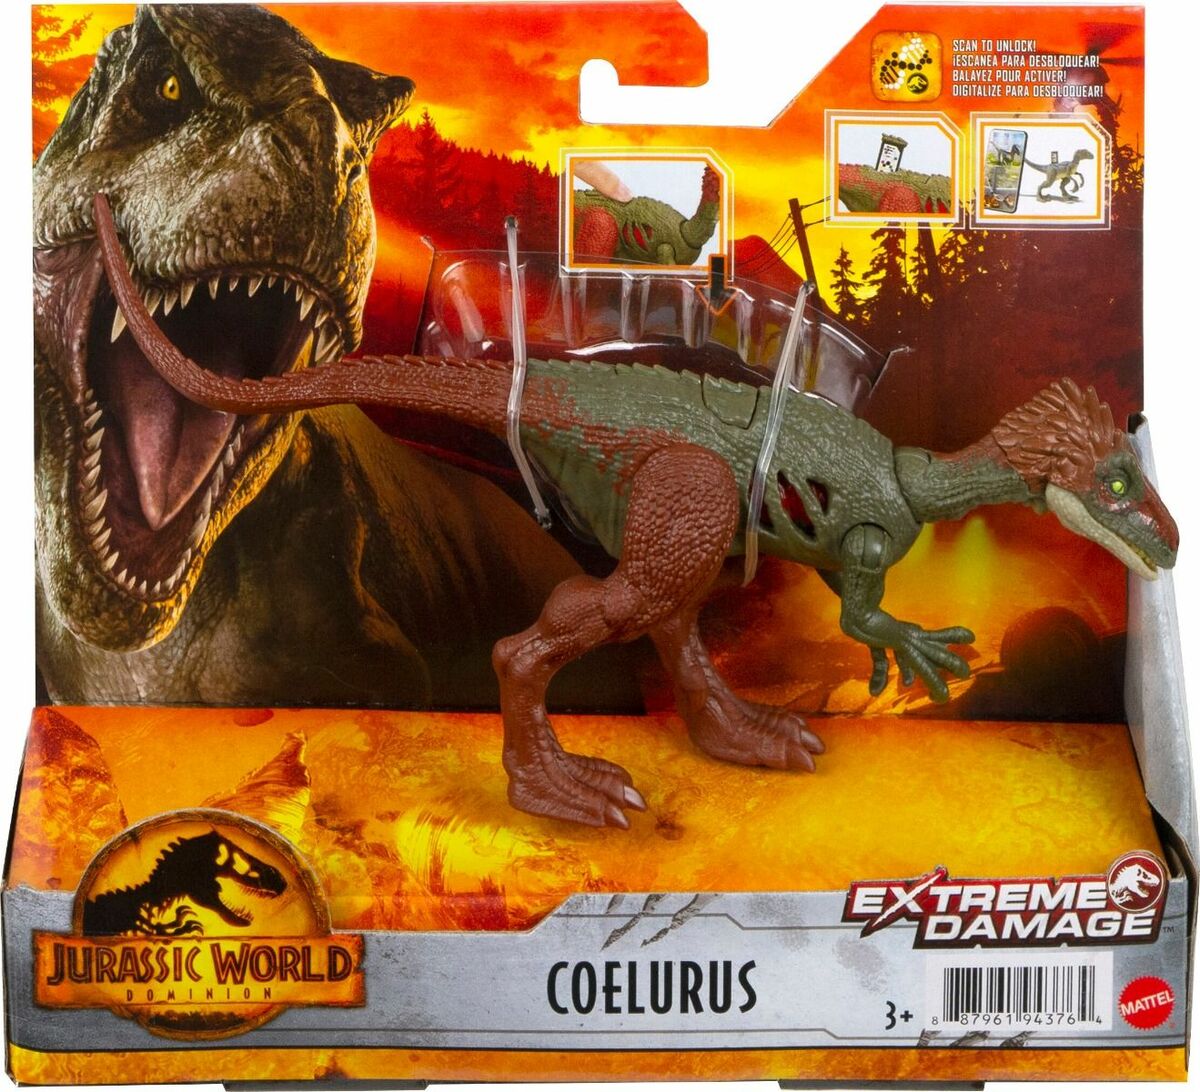 Jurassic World Extreme Damage Coelurus